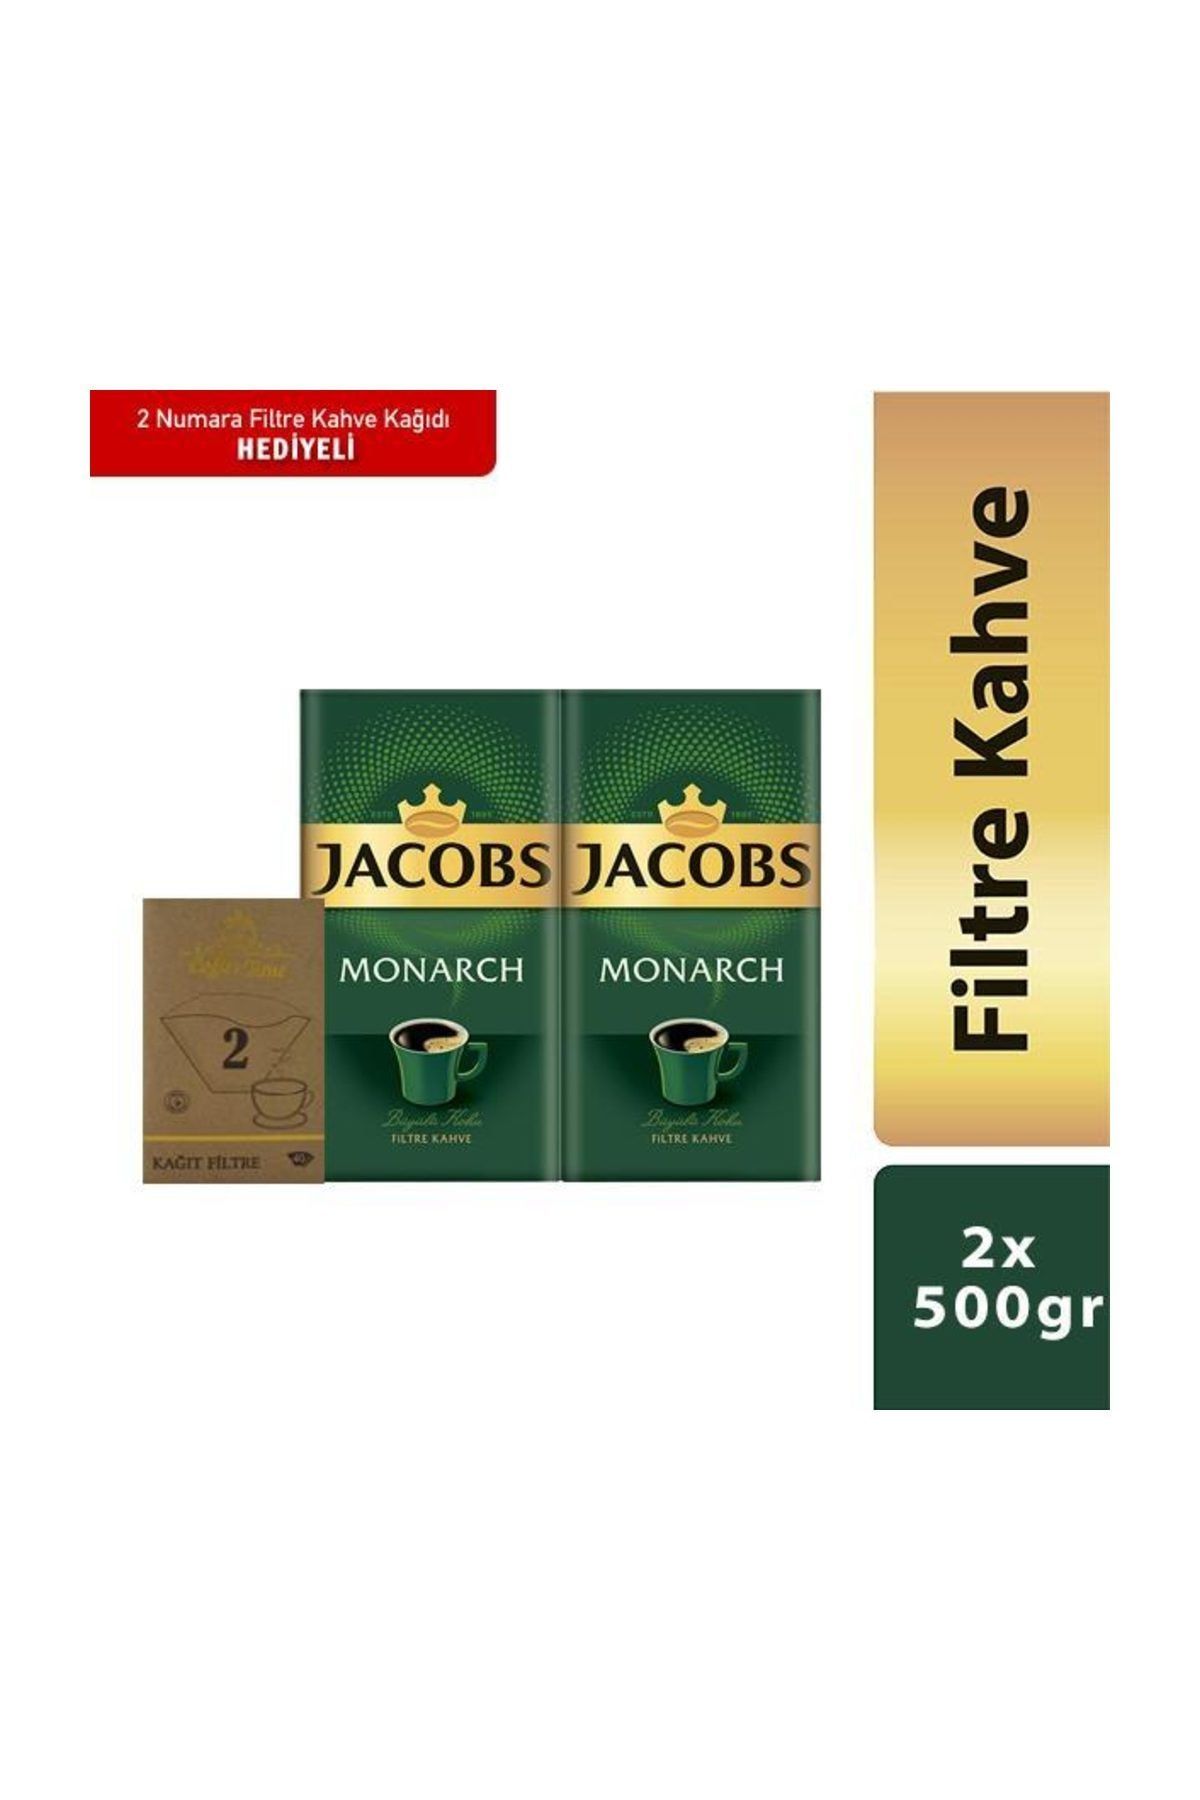 Jacobs Jacobs Monarch Filtre Kahve 2 Adet+Filtre Kahve Kağıdı 2 Numara